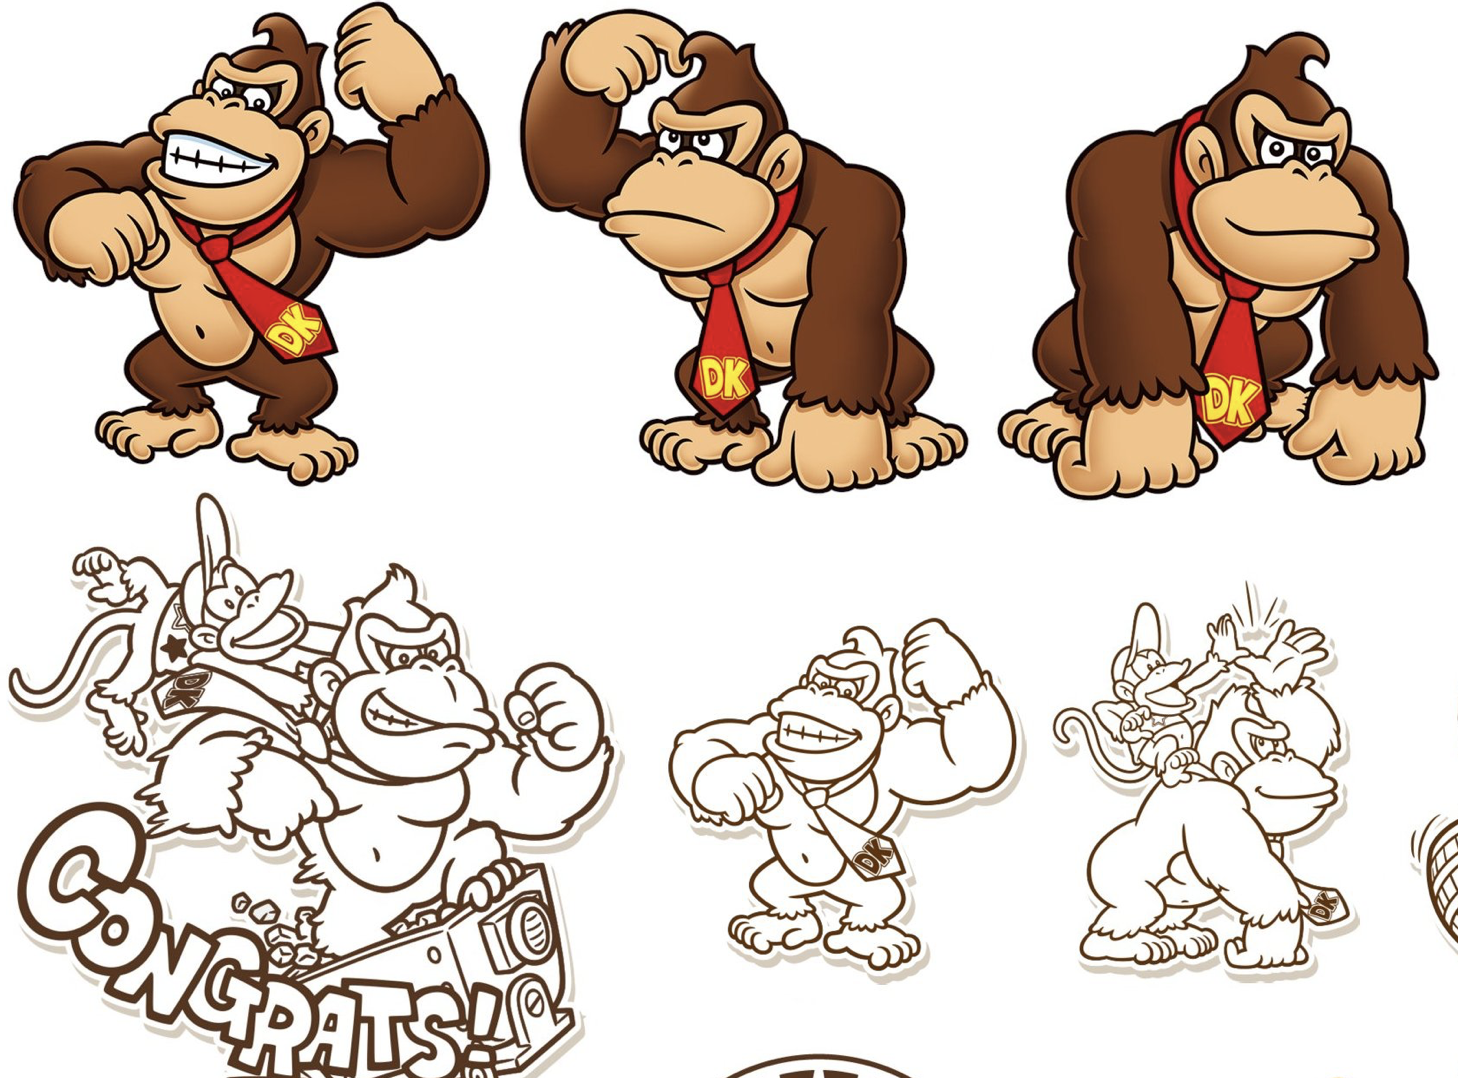 [Rumor - Confirmado] Imagens escondidas de Donkey Kong no aplicativo do Super Nintendo World podem indicar expansão do parque